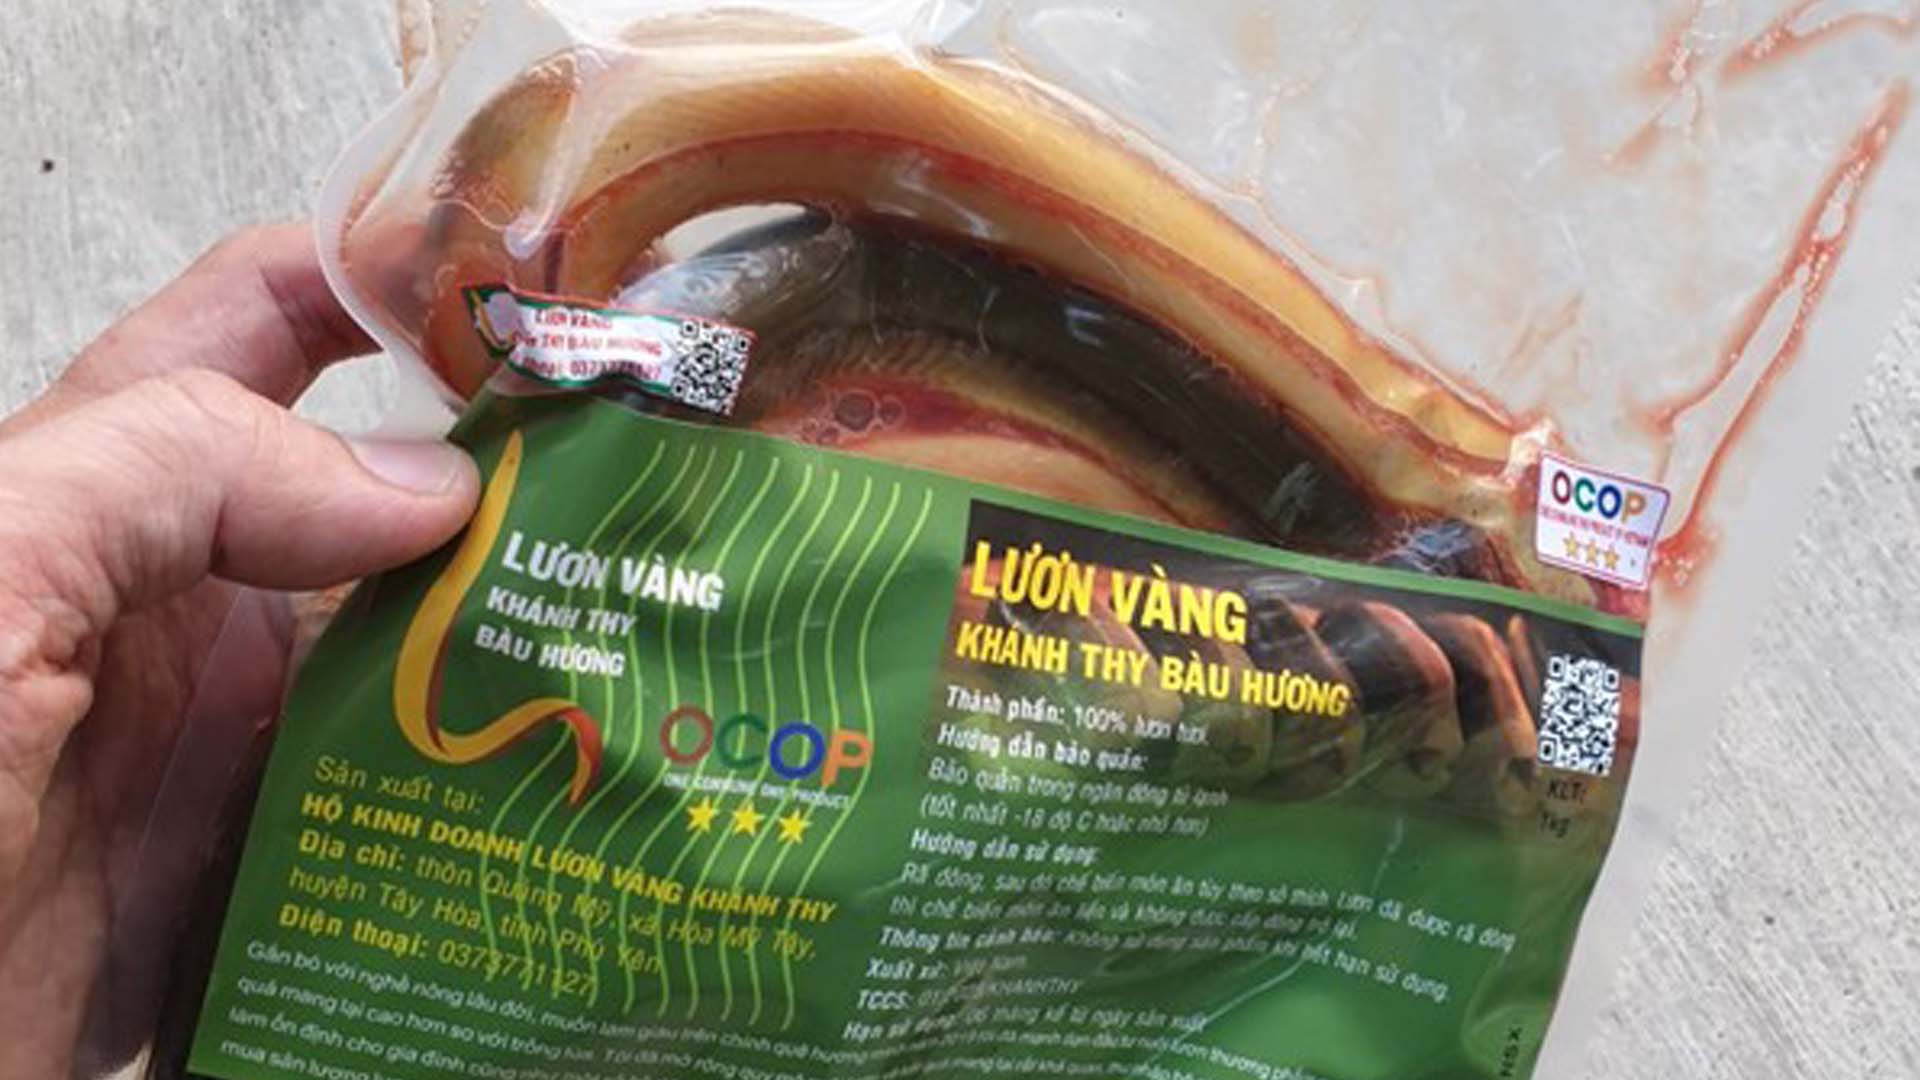 Phú Yên: Sản phẩm OCOP 3 sao lươn vàng Khánh Thy Bàu Hương